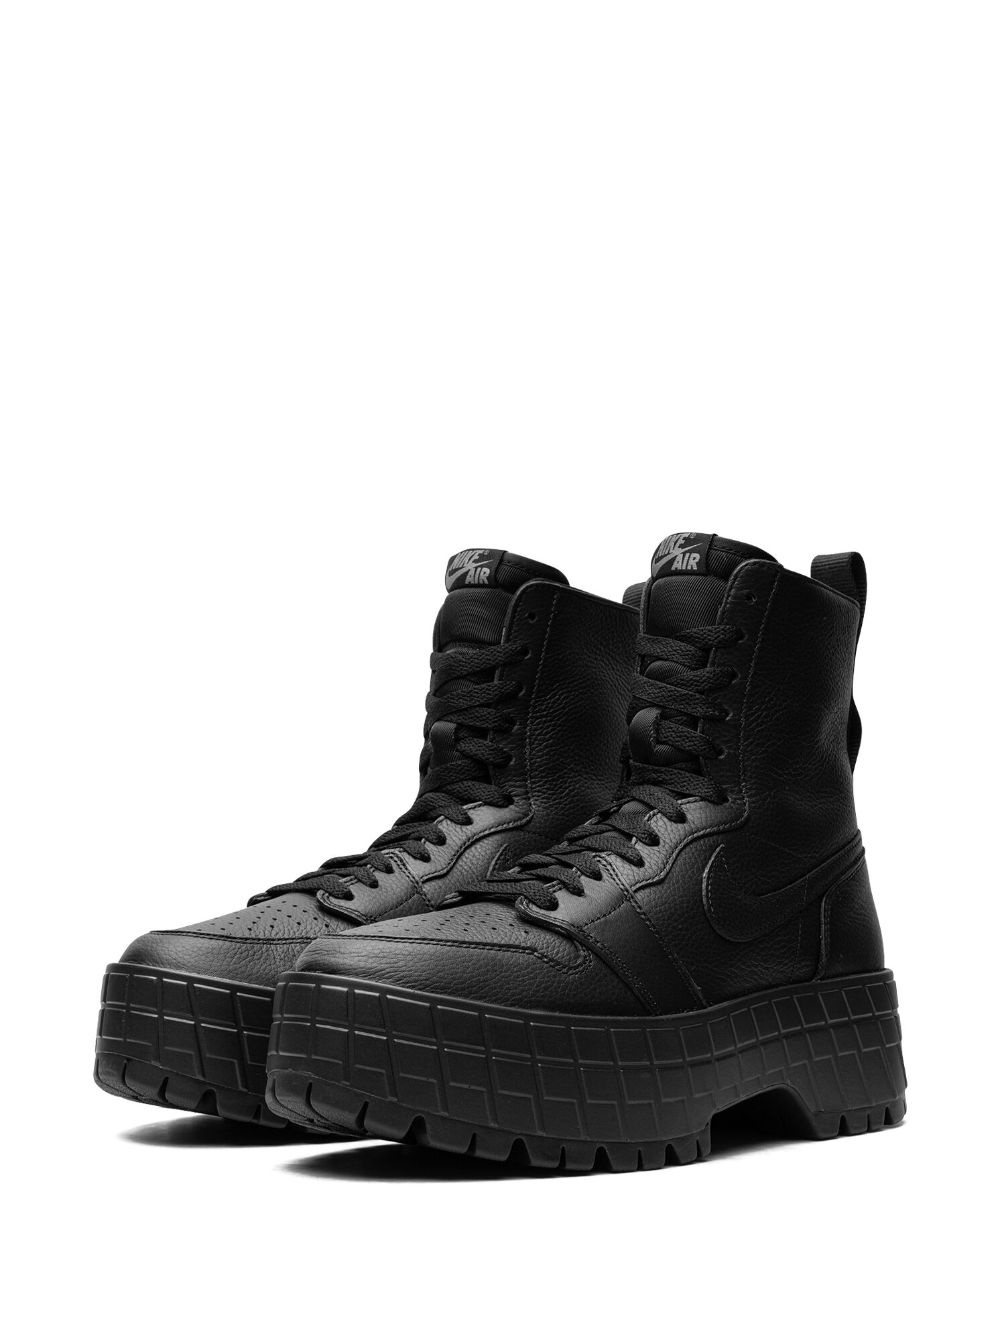 Air Jordan 1 Brooklyn boots - 5